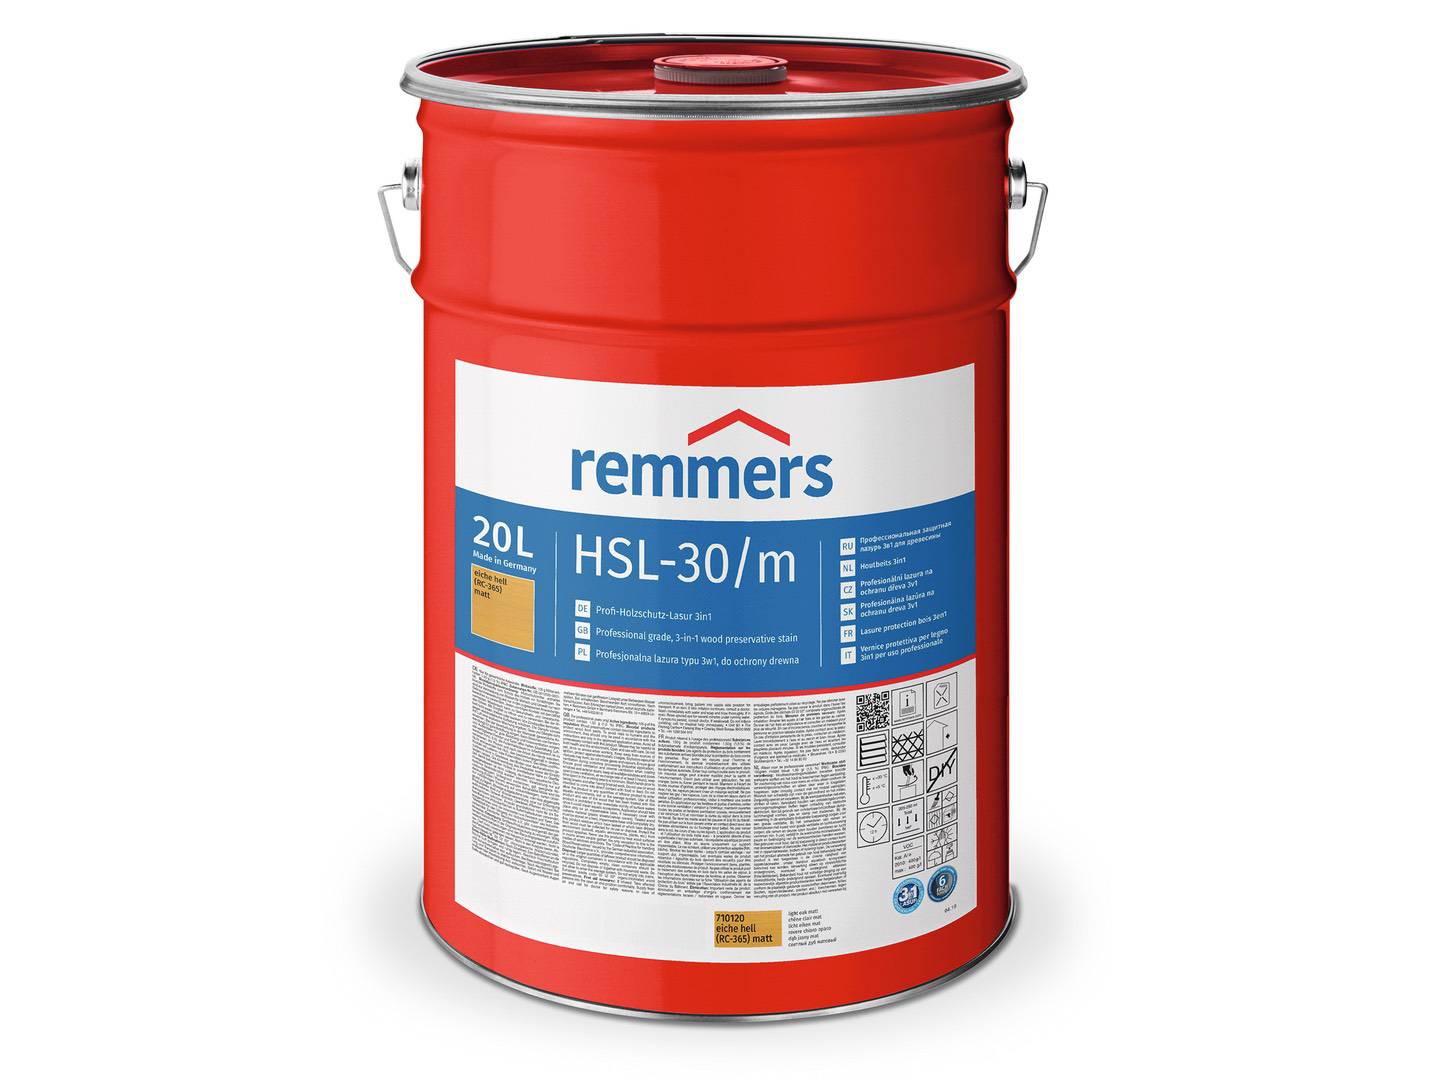 REMMERS HSL-30/m-Profi-Holzschutz-Lasur 3in1 silbergrau (RC-970) matt 10 l